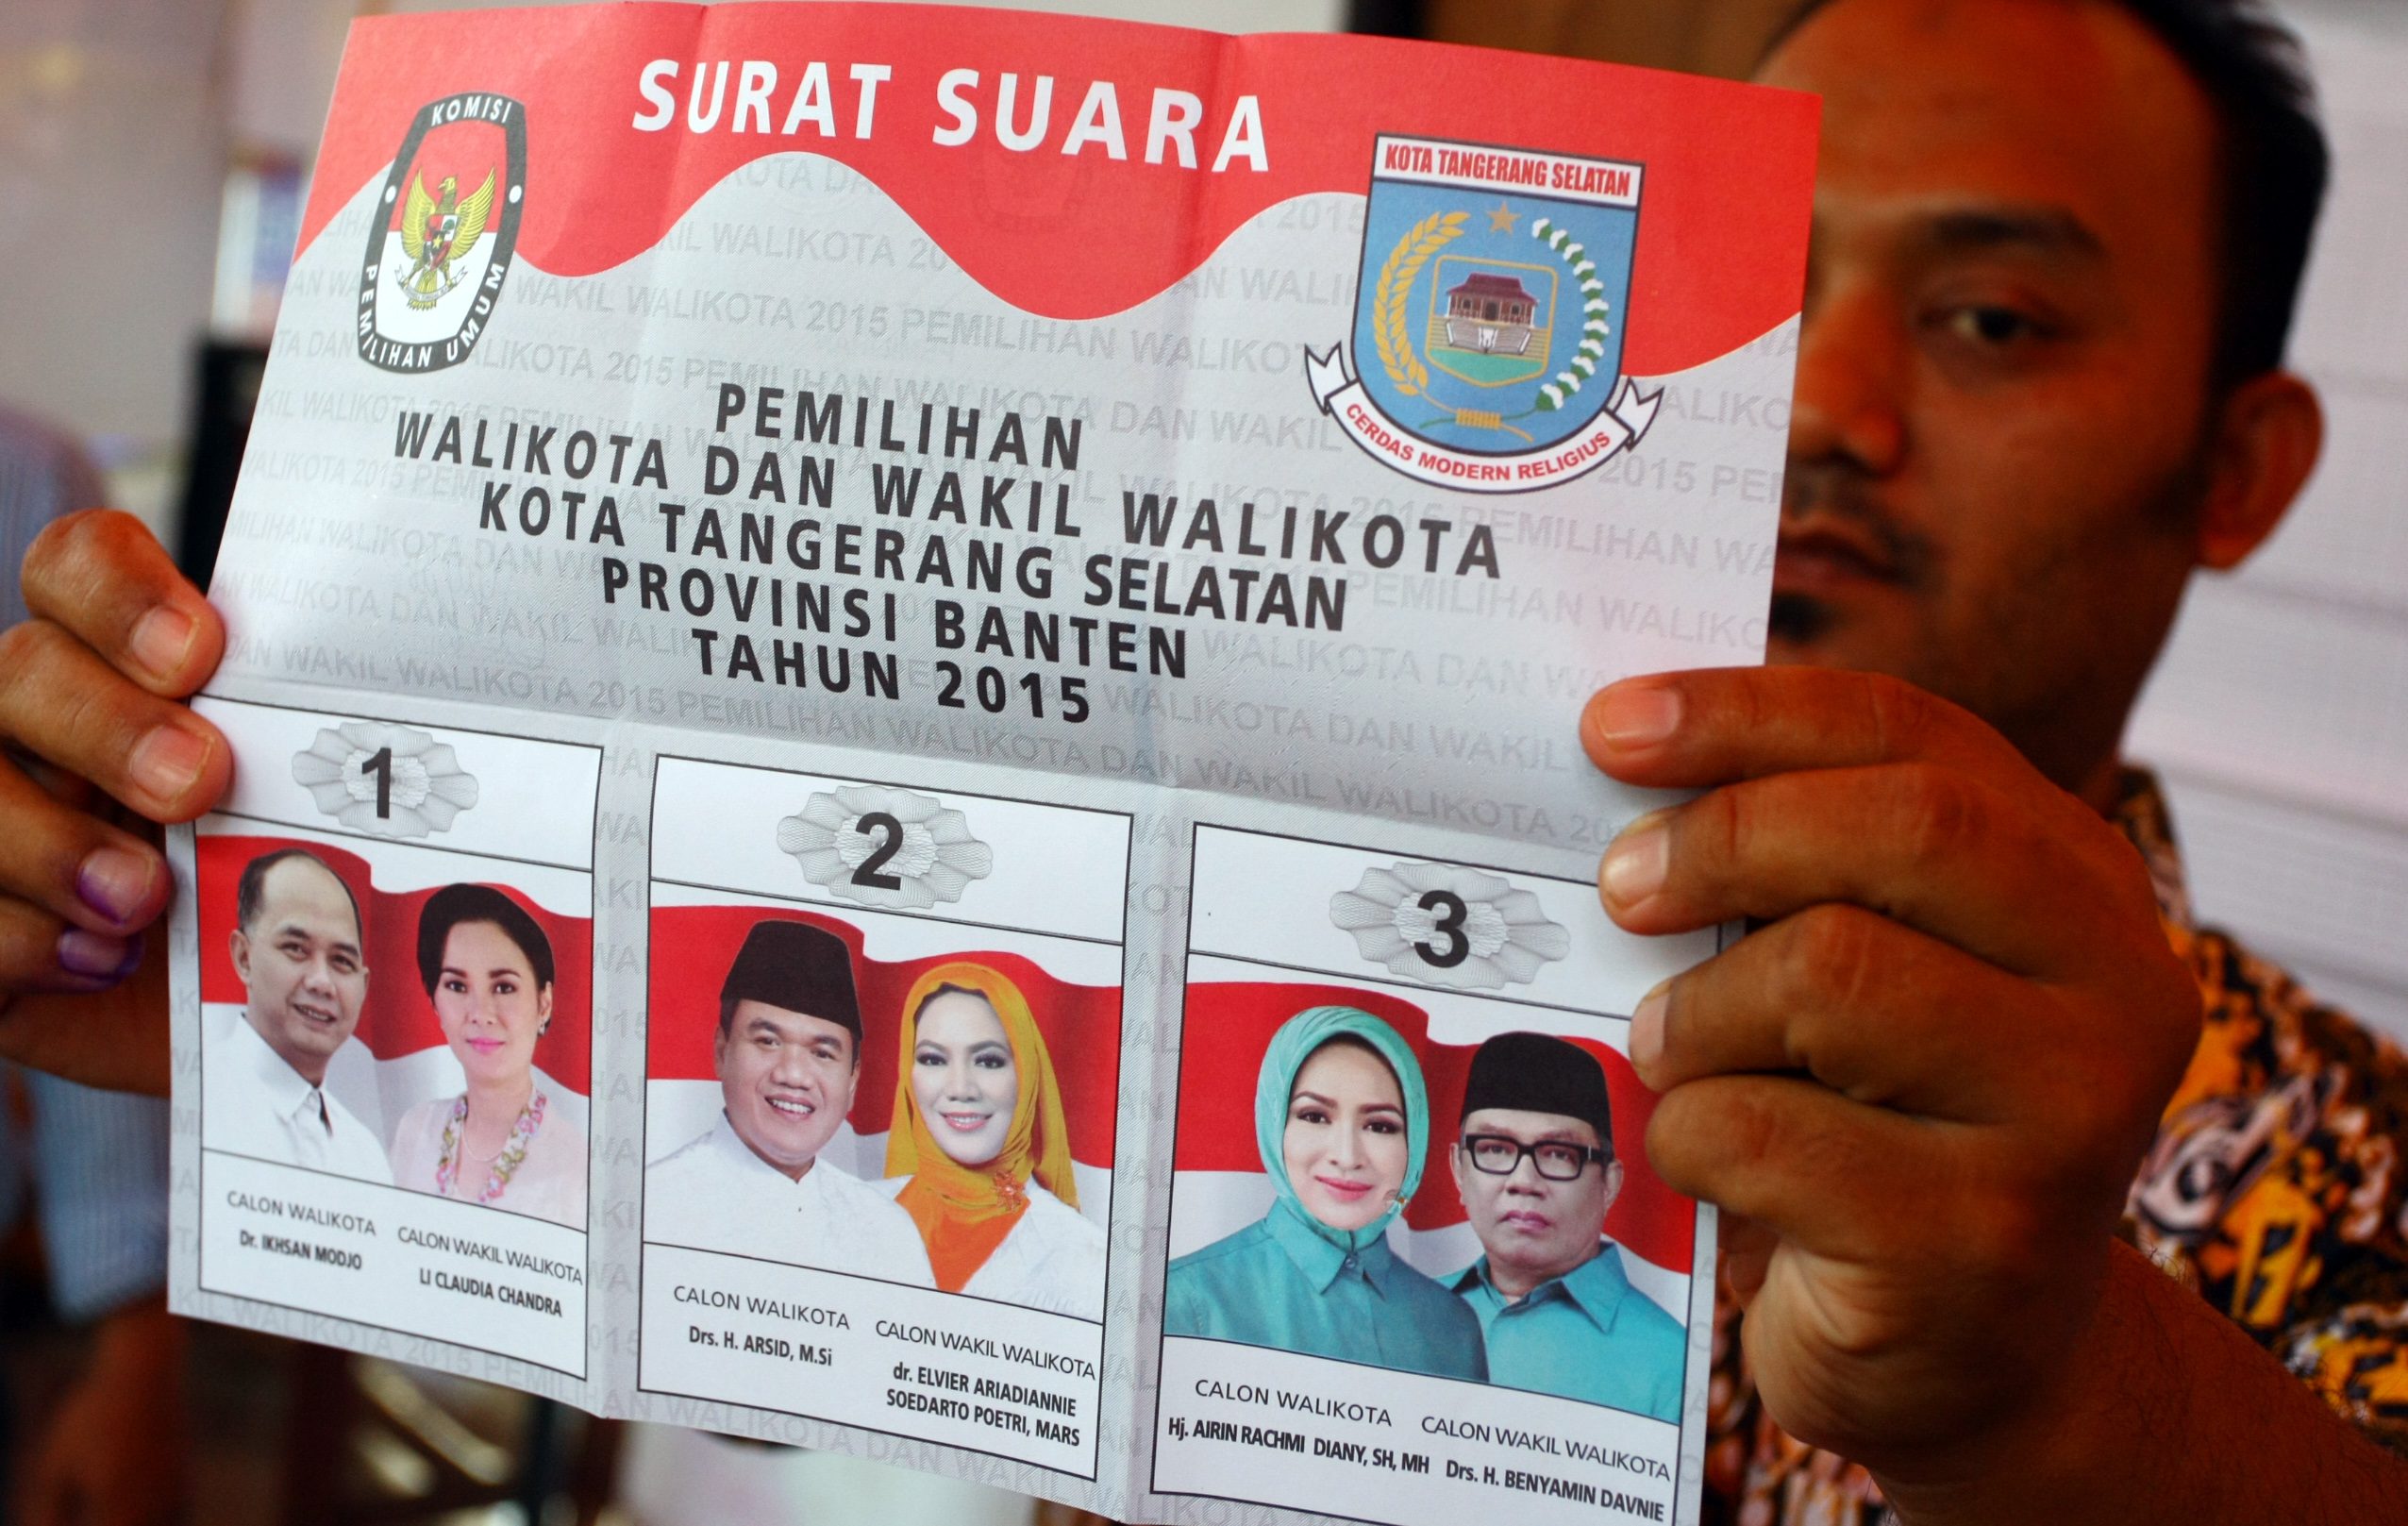 Pengamat soal pilkada serentak 2015: Indonesia siap berdemokrasi